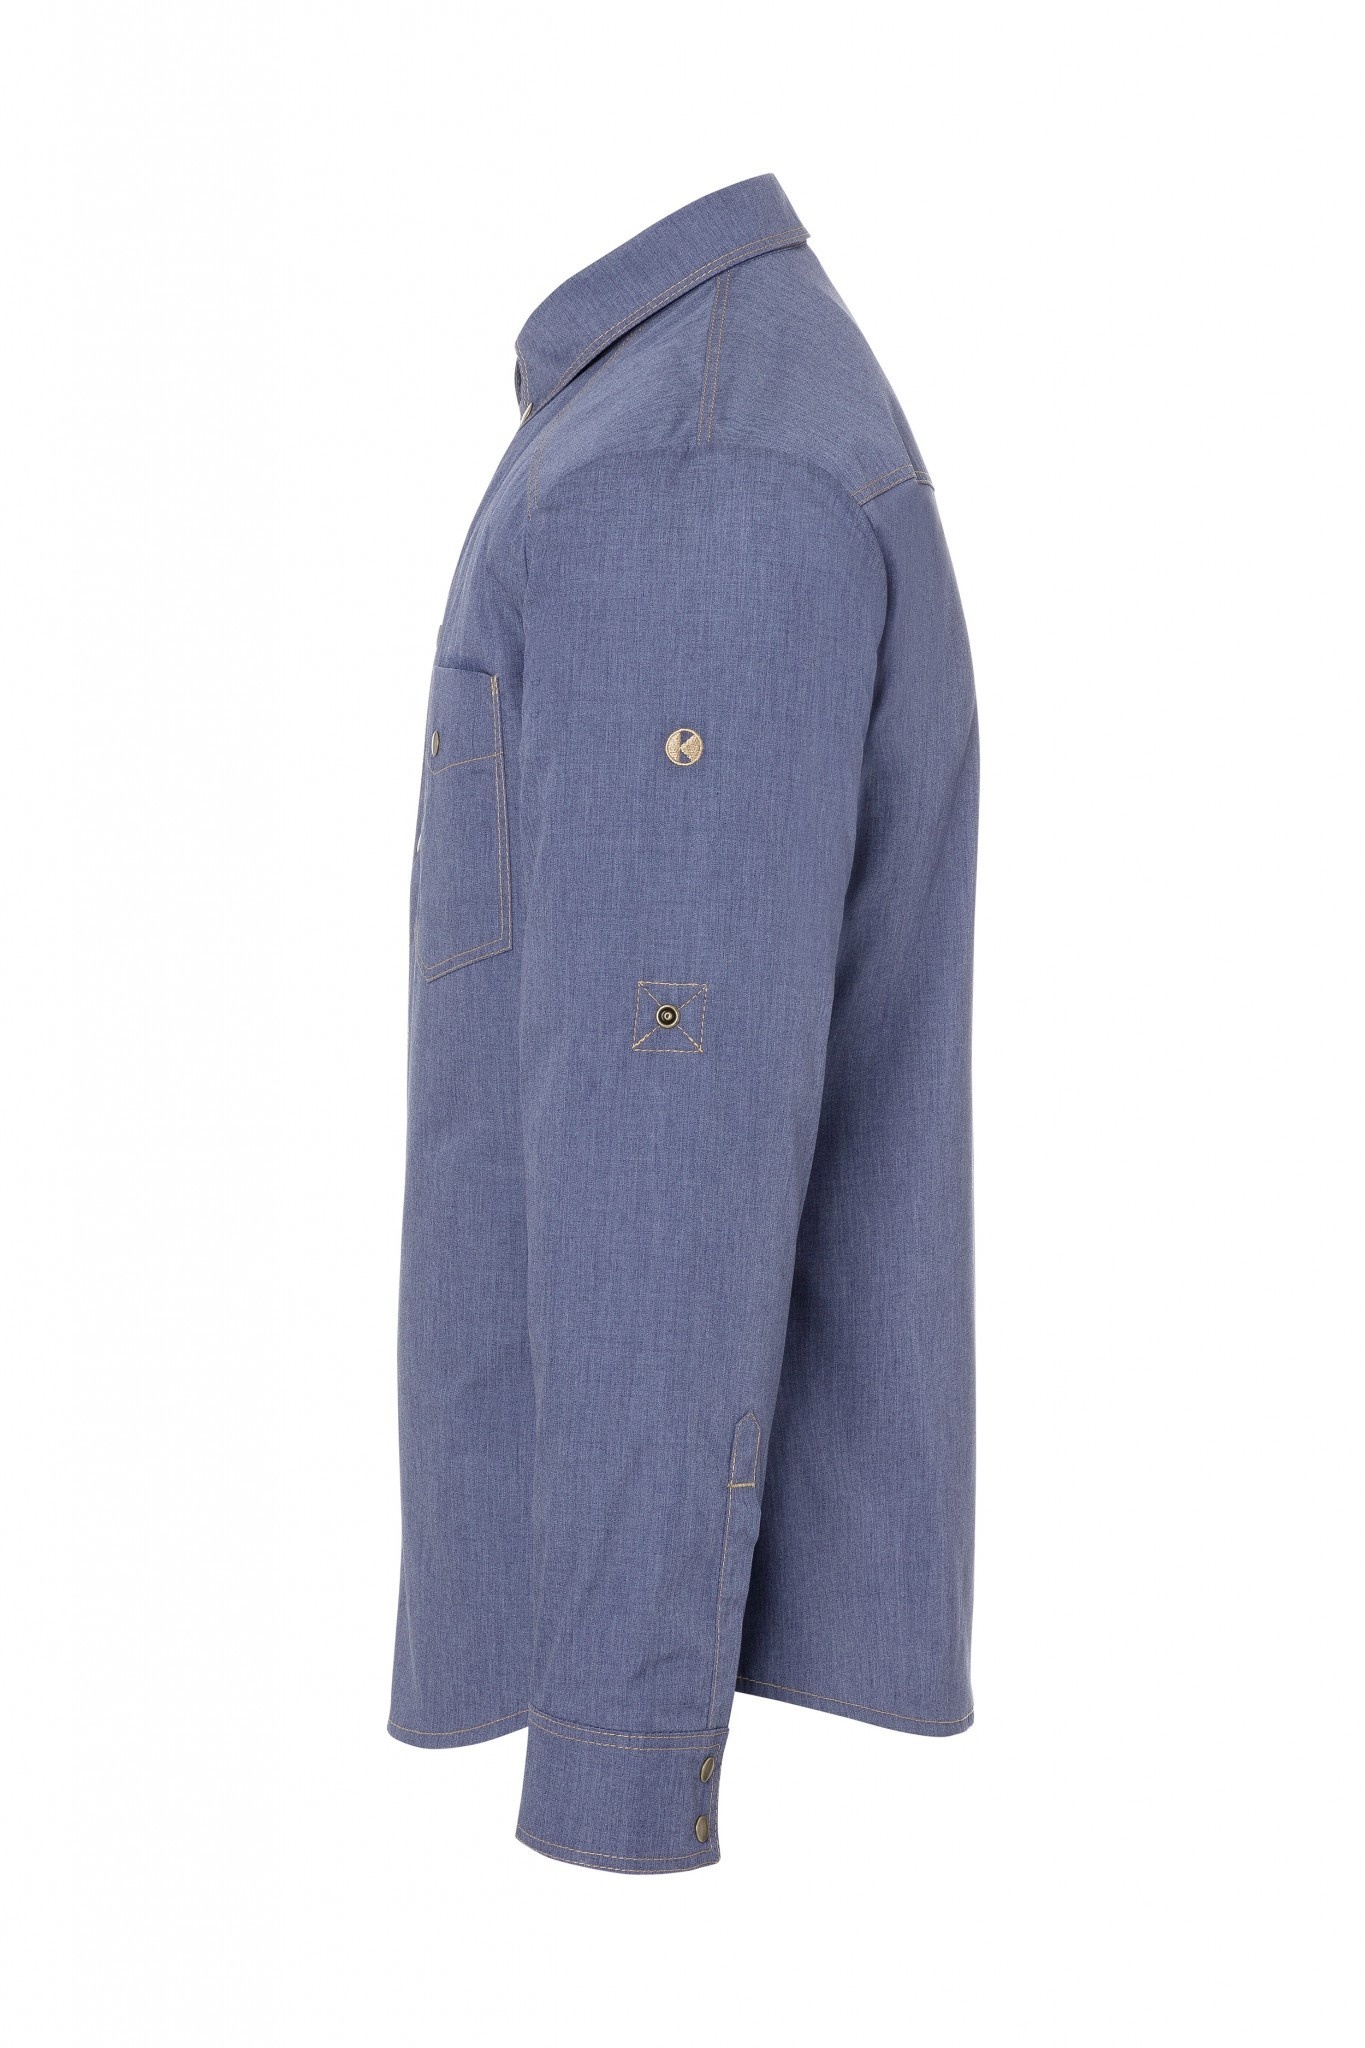 Kochhemd Jeans-Style | Vintage Blue | 65% Polyester / 35% Baumwolle | Erhältlich in 10 Größen